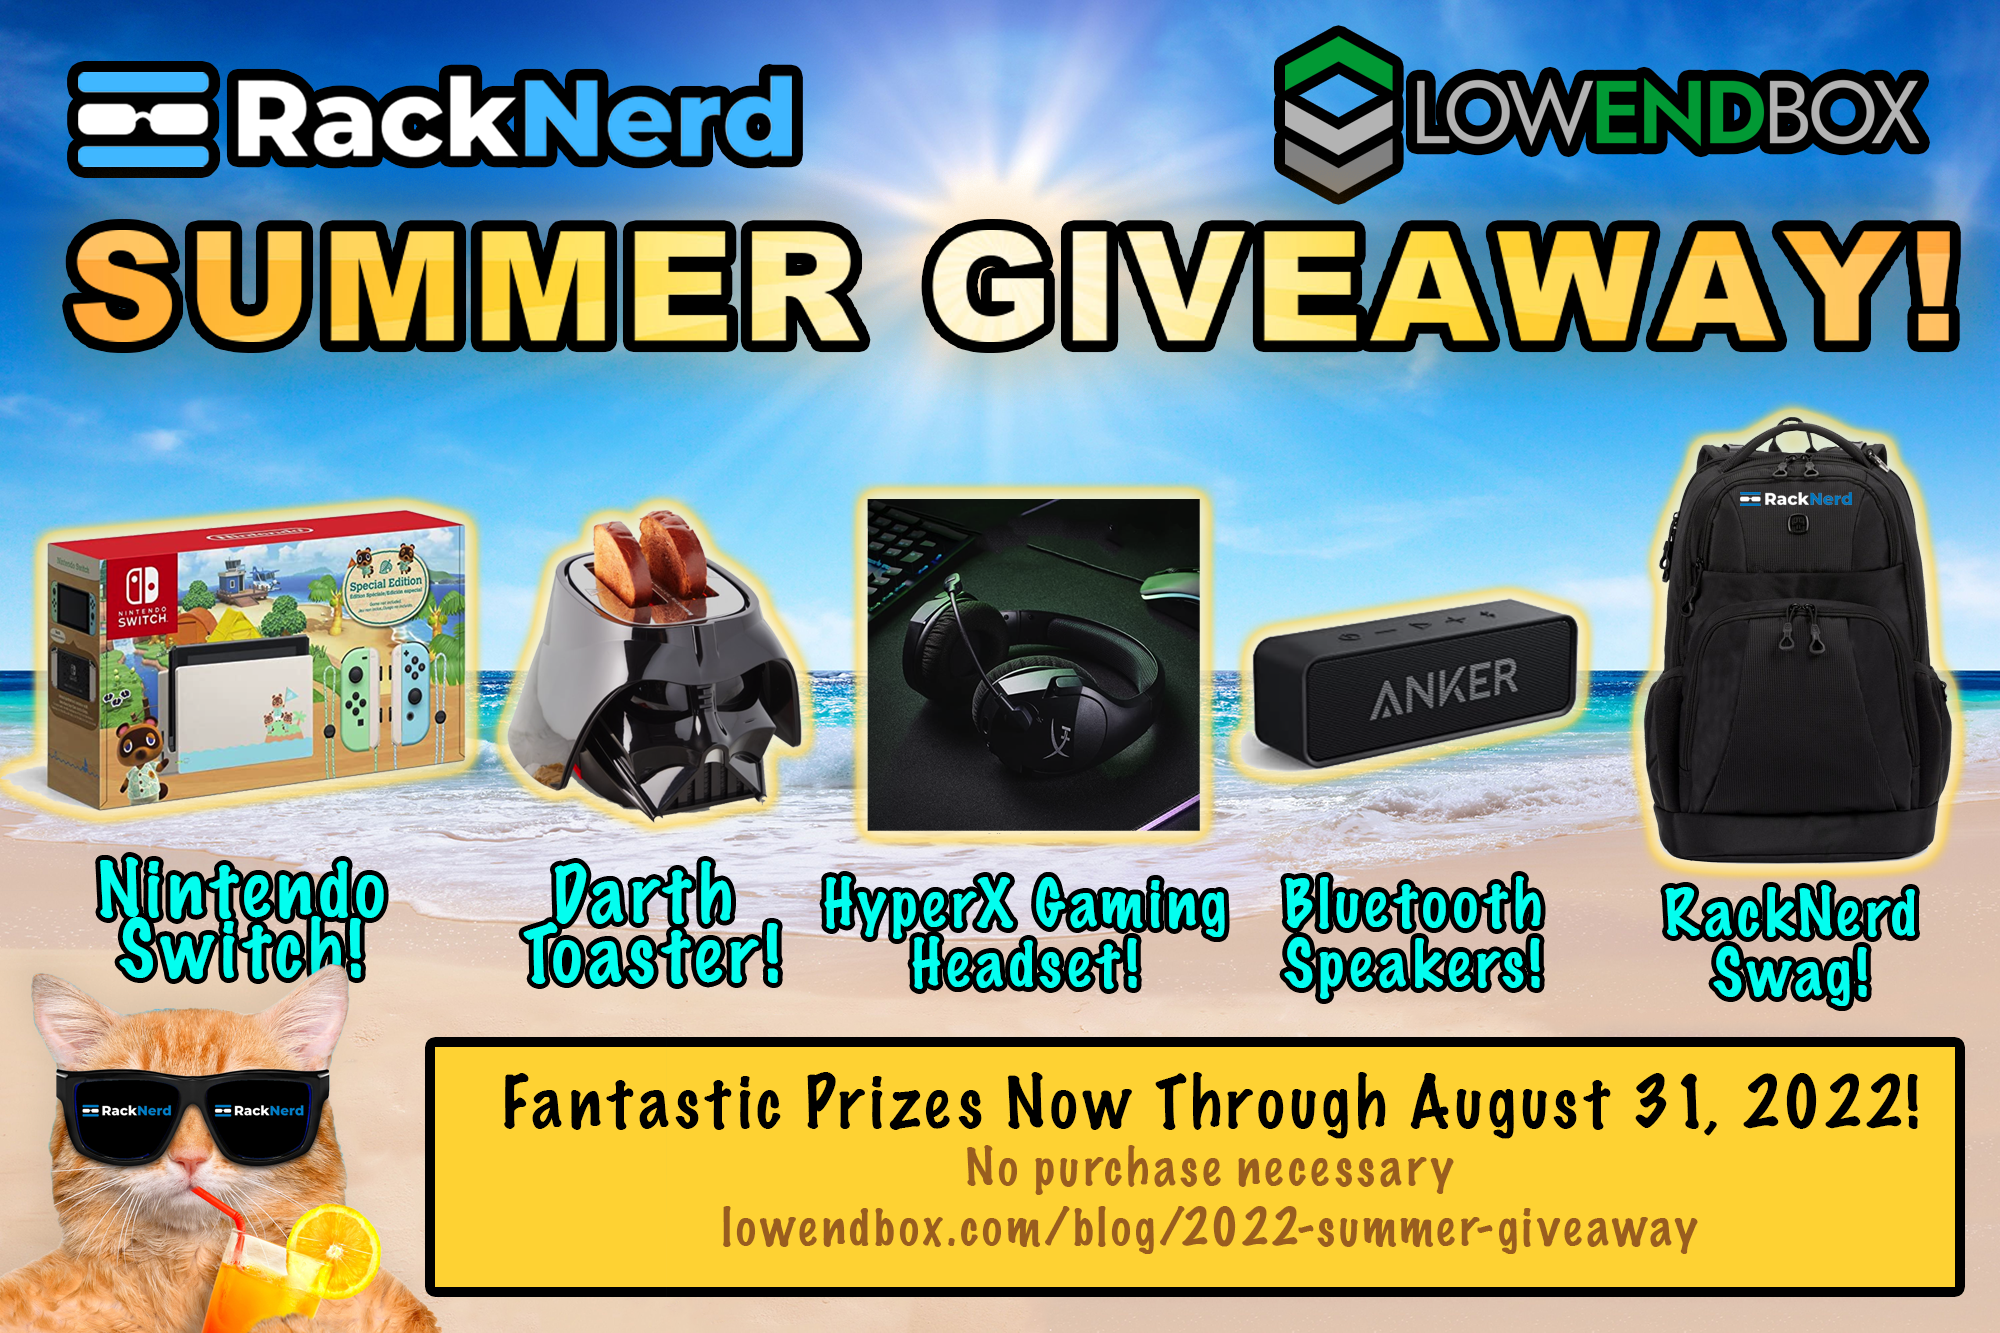 falsk kandidat Misforstå Win a Nintendo Switch, Darth Vader Toaster, and MORE In RackNerd's Summer  Giveaway! — LowEndTalk